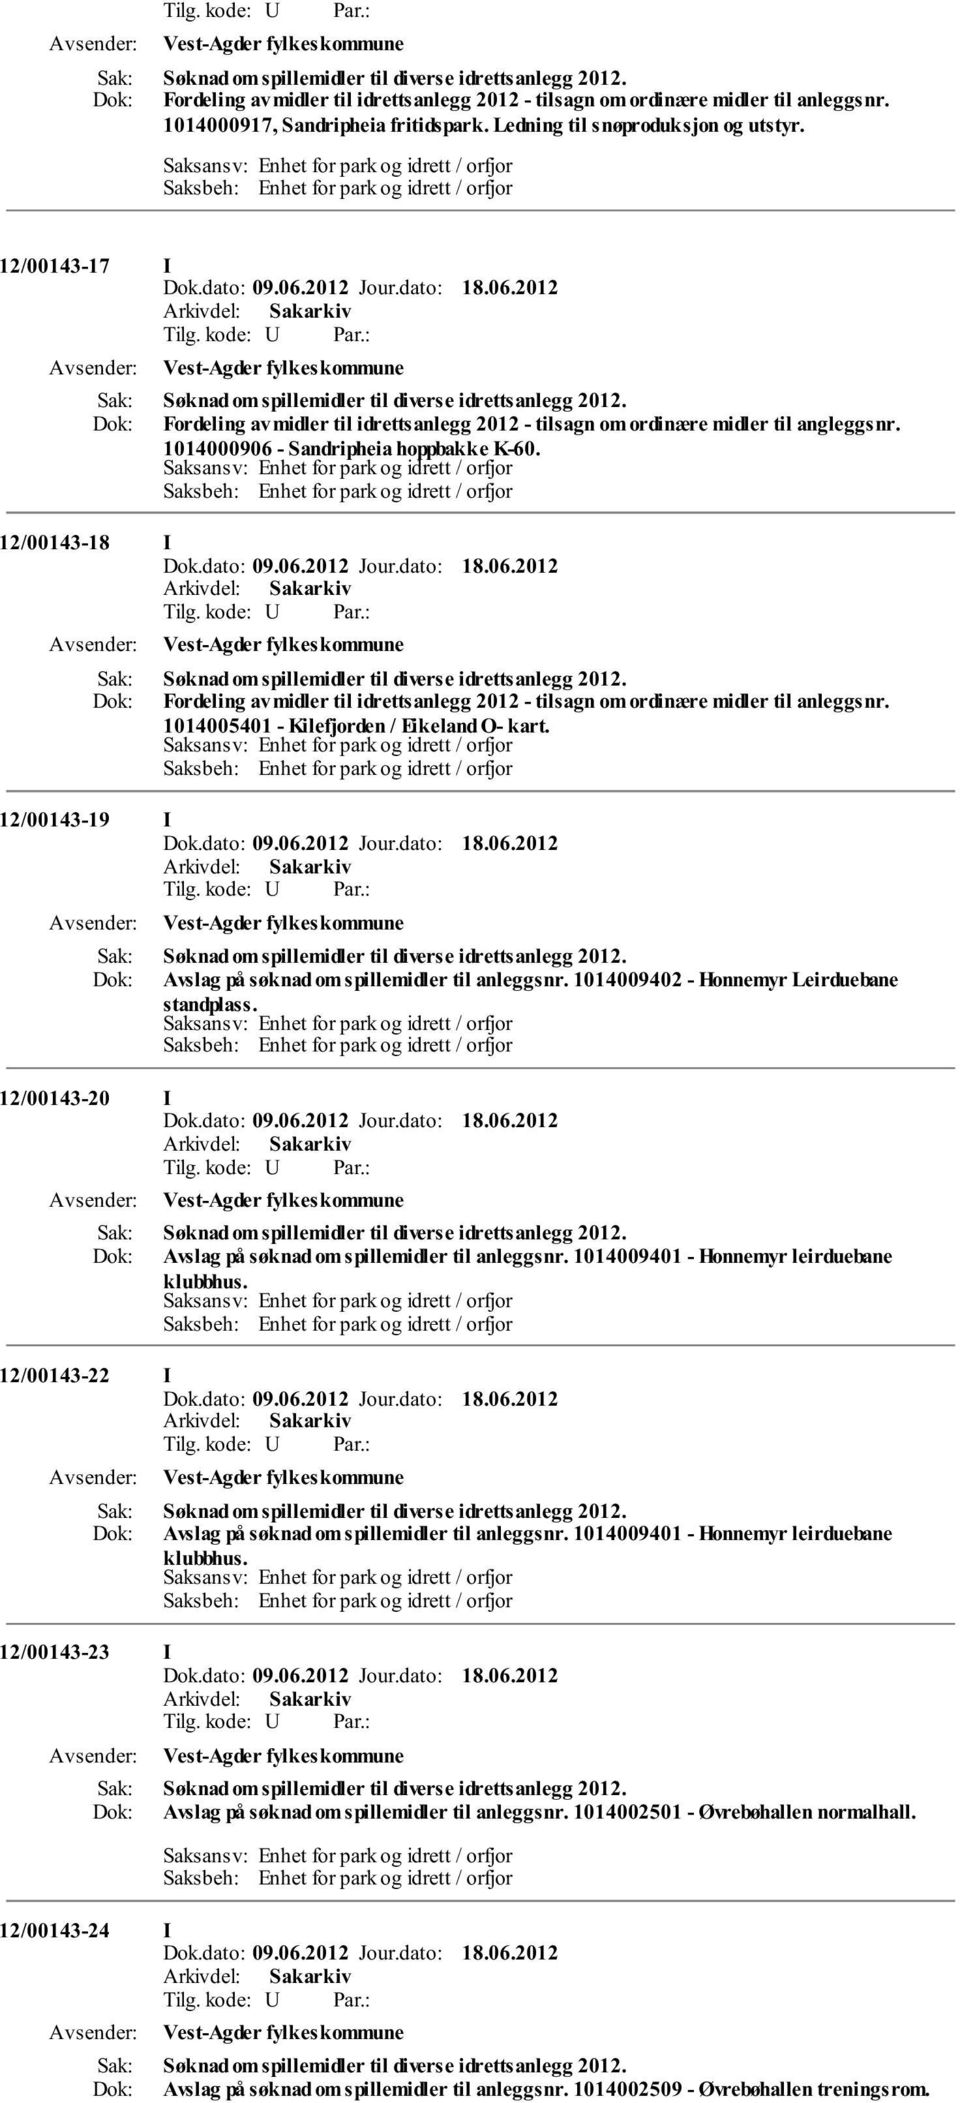 Fordeling av midler til idrettsanlegg 2012 - tilsagn om ordinære midler til angleggsnr. 1014000906 - Sandripheia hoppbakke K-60. 12/00143-18 I  1014005401 - Kilefjorden / Eikeland O- kart.